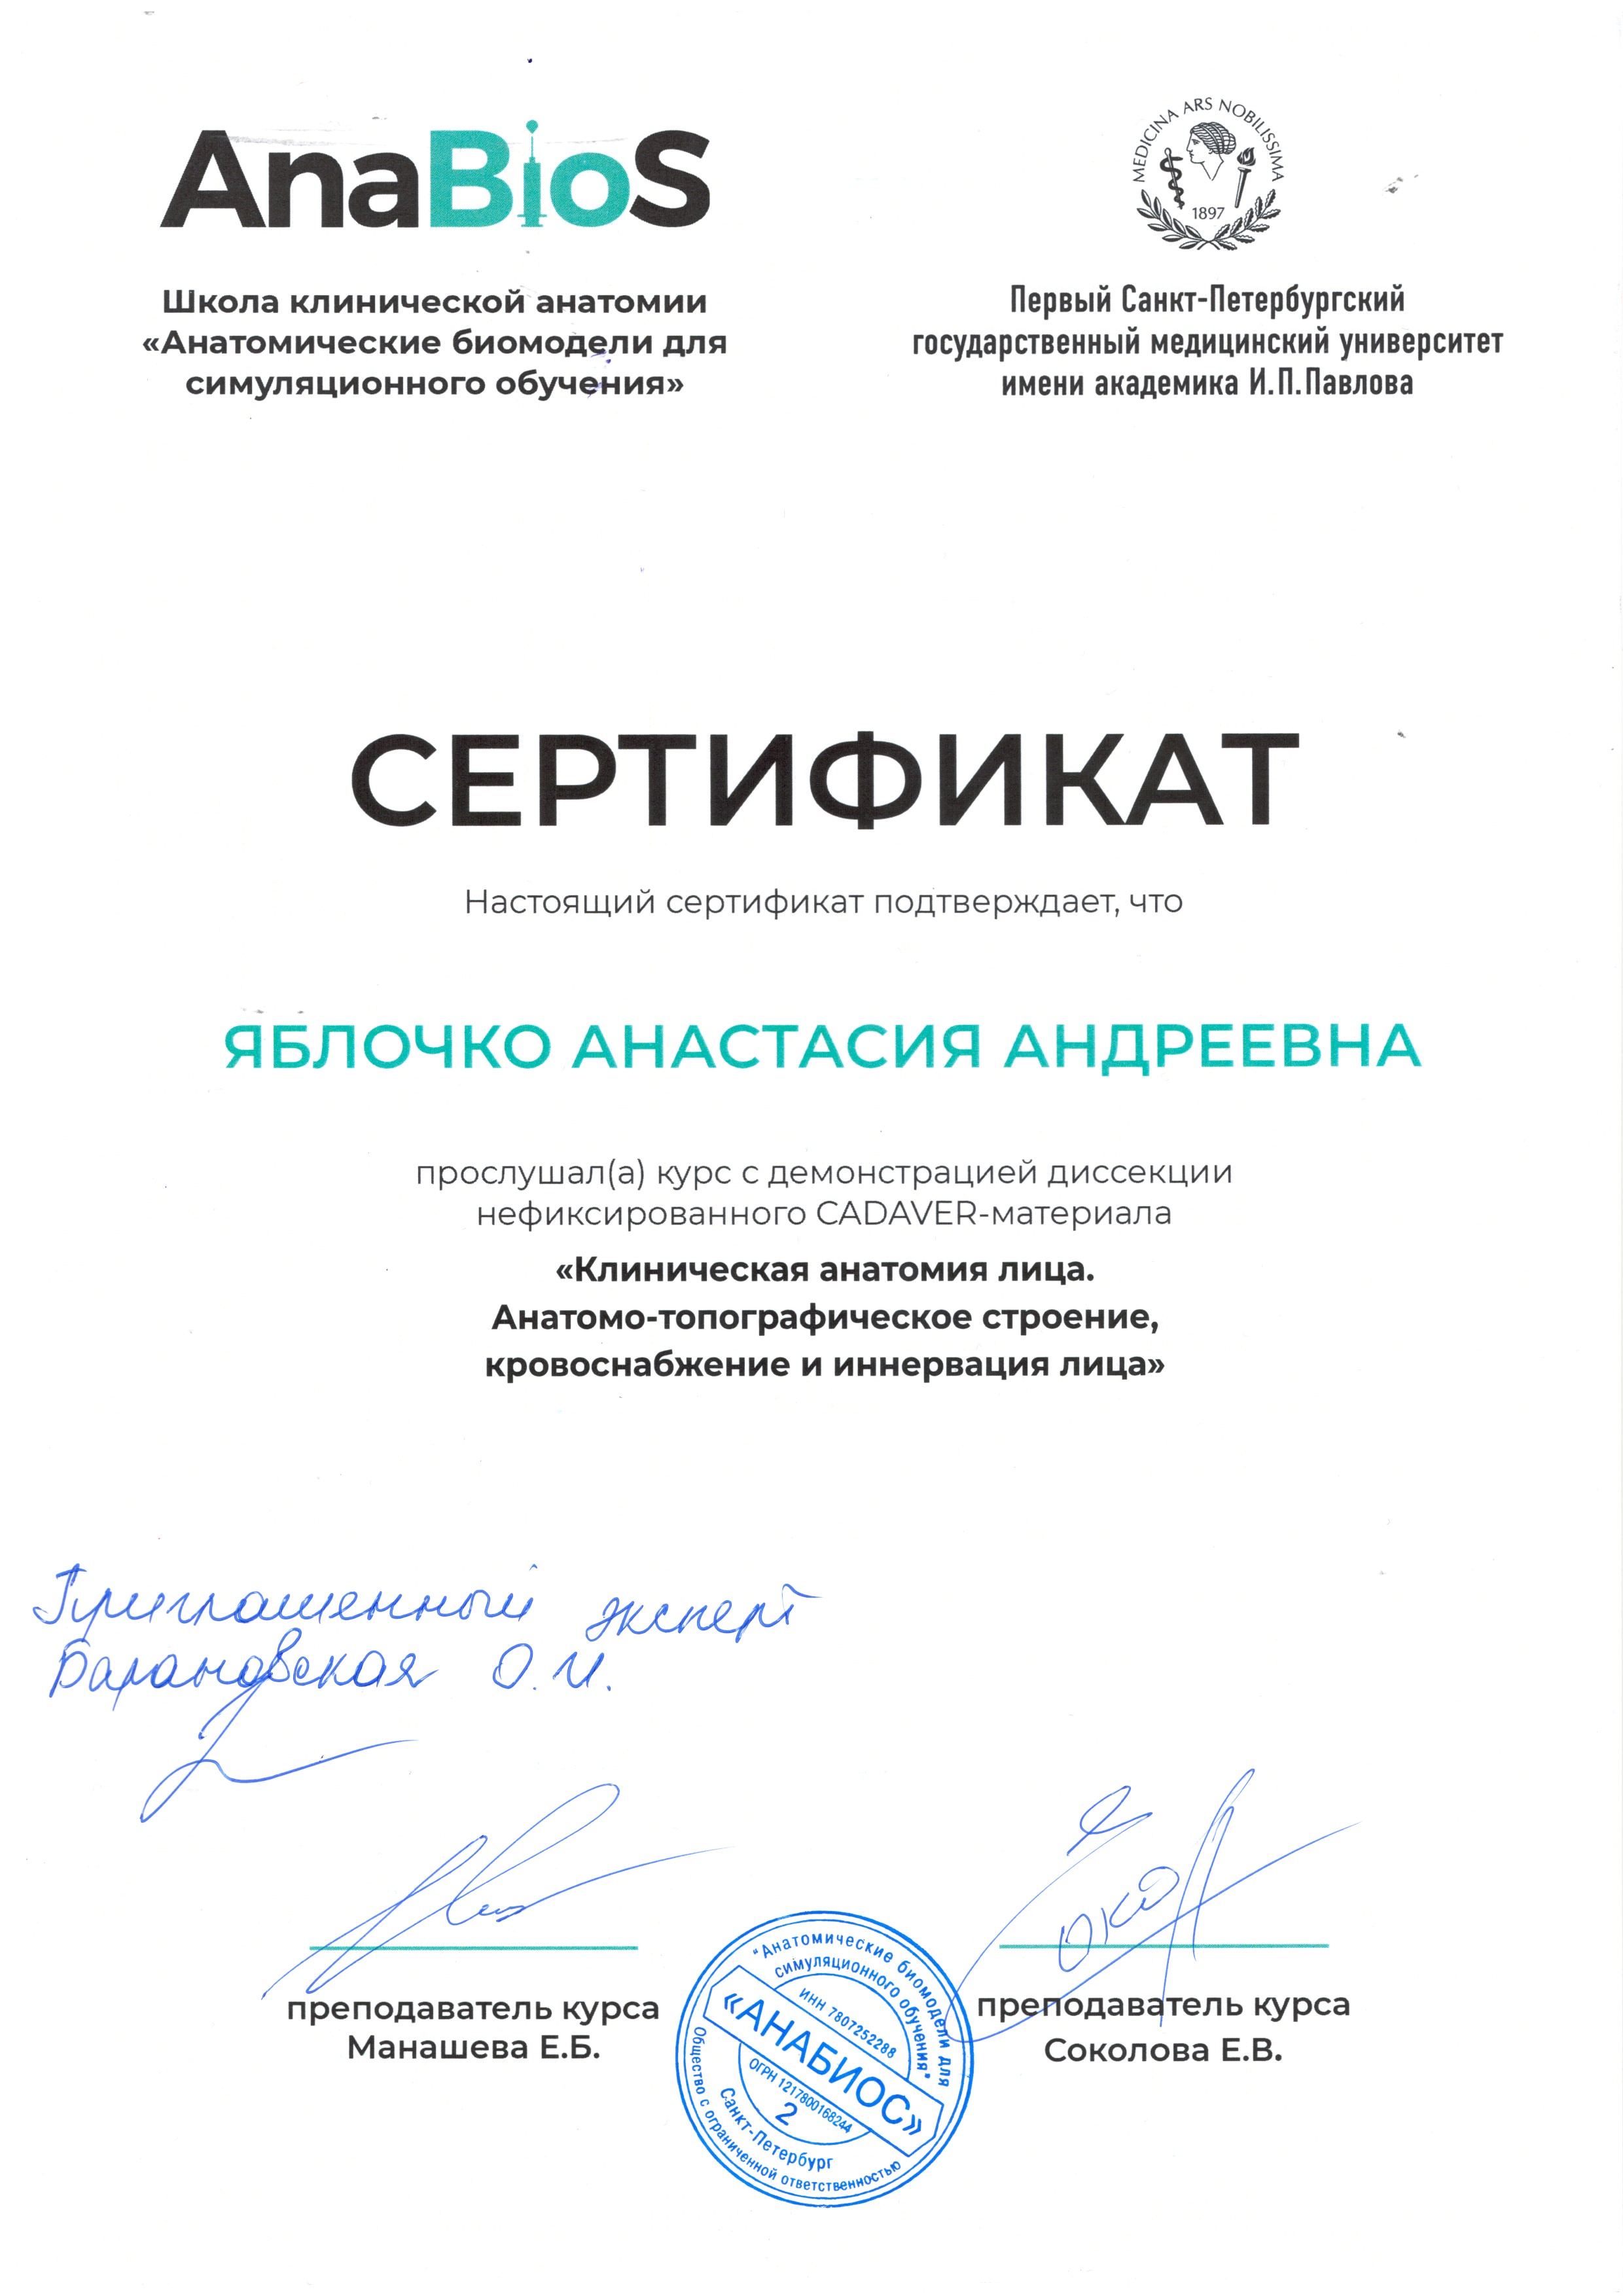 Сертификат — Курс «Клиническая анатомия лица». Яблочко Анастасия Андреевна